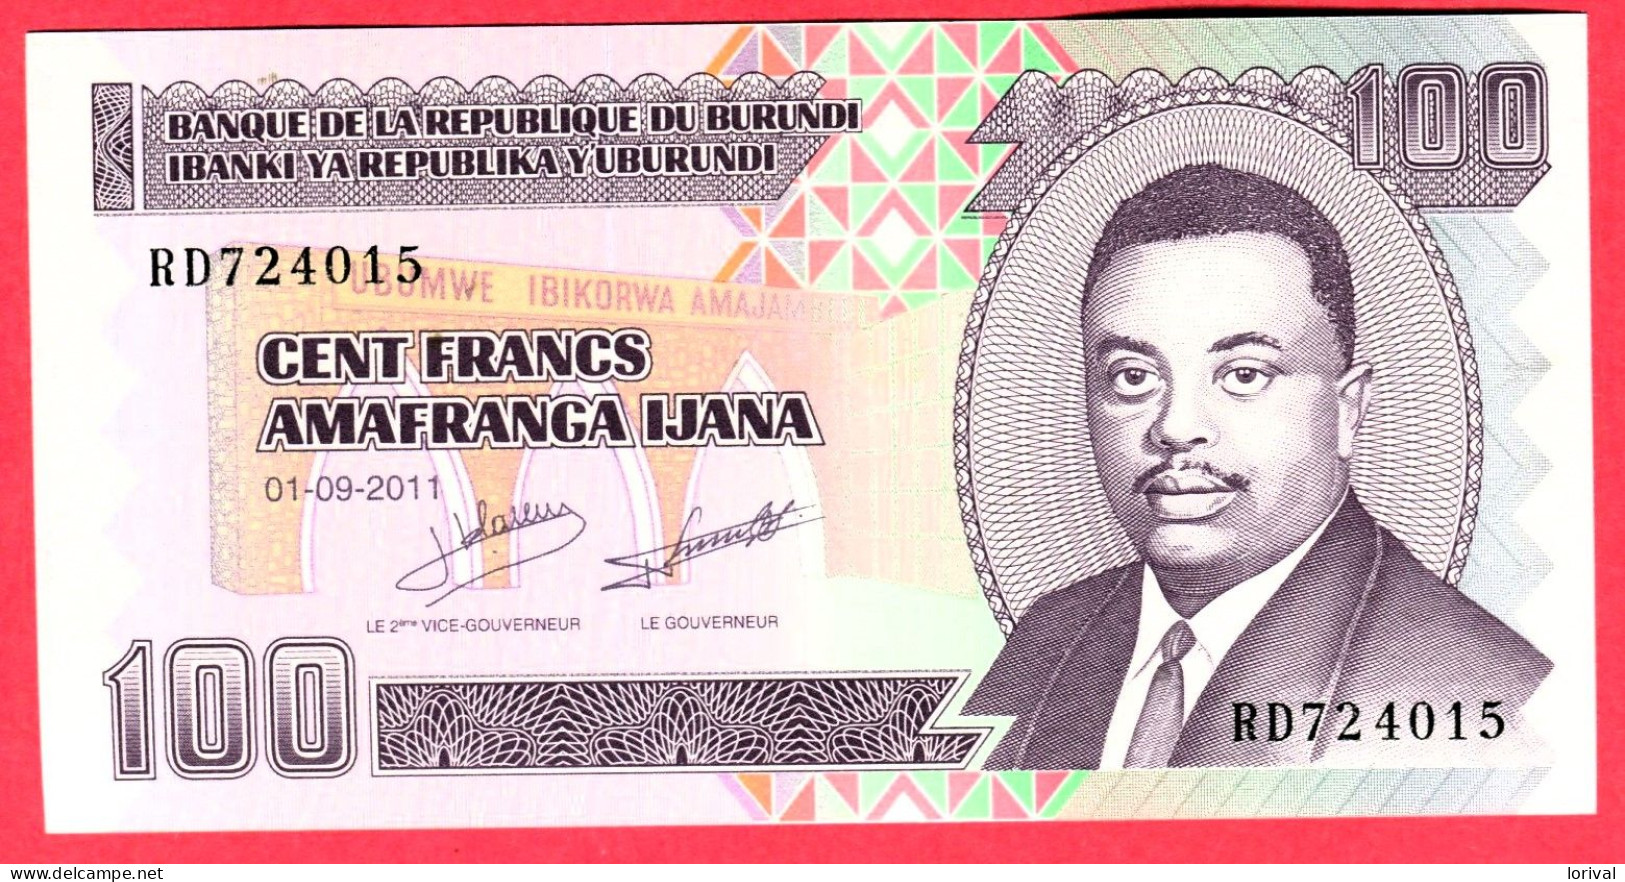 100 Francs Neuf 3 Euros - Burundi